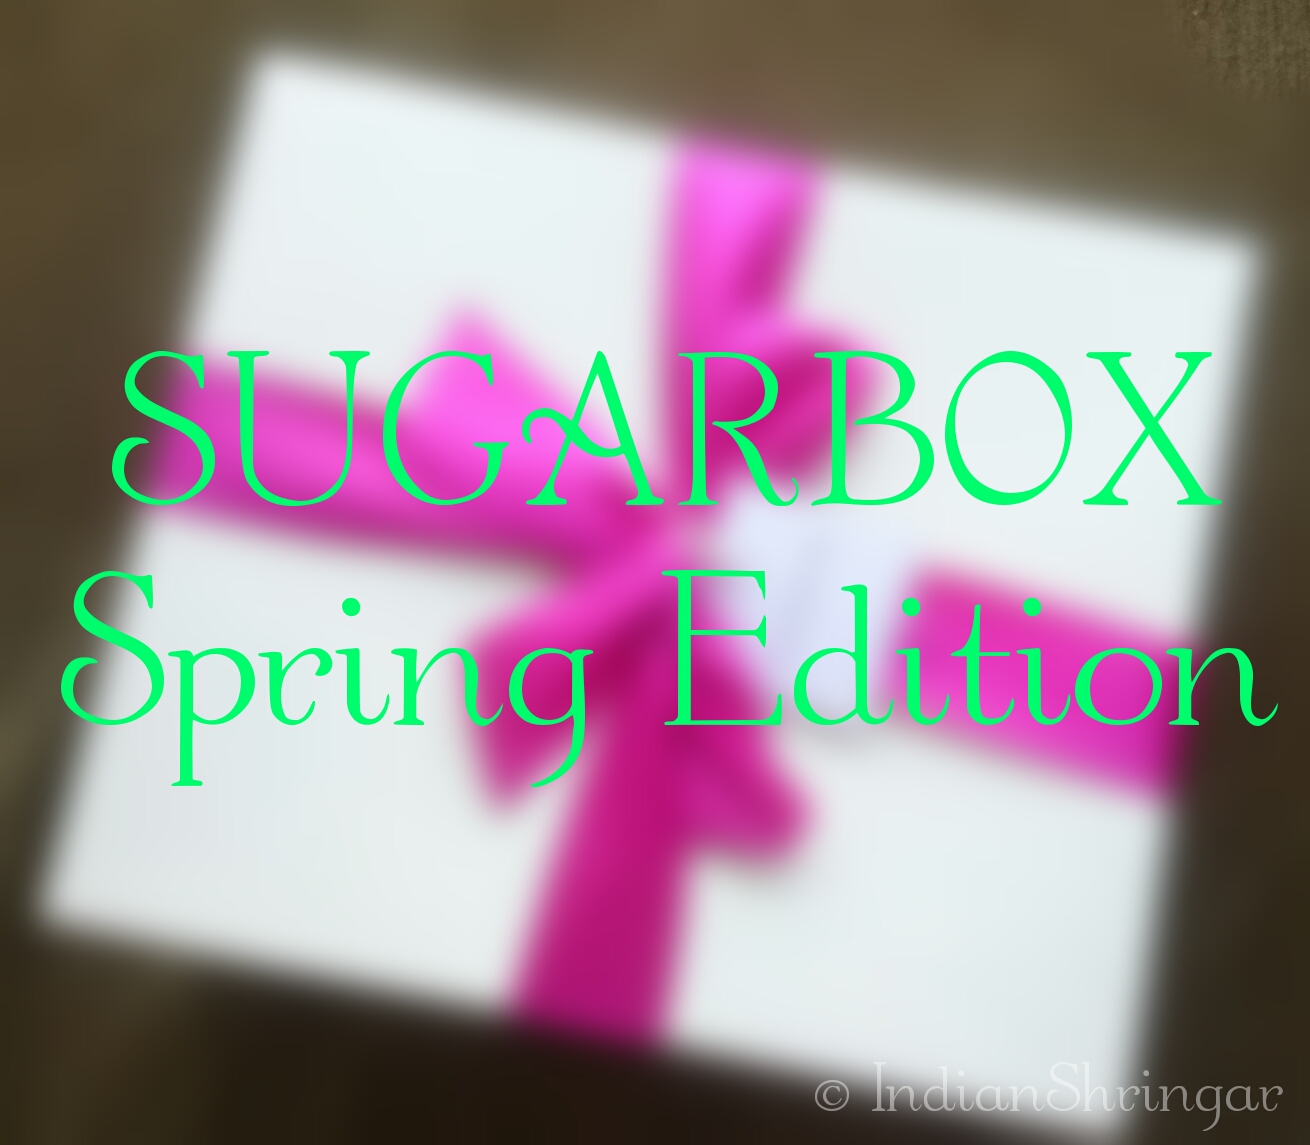 Sugarbox Spring Edition contents